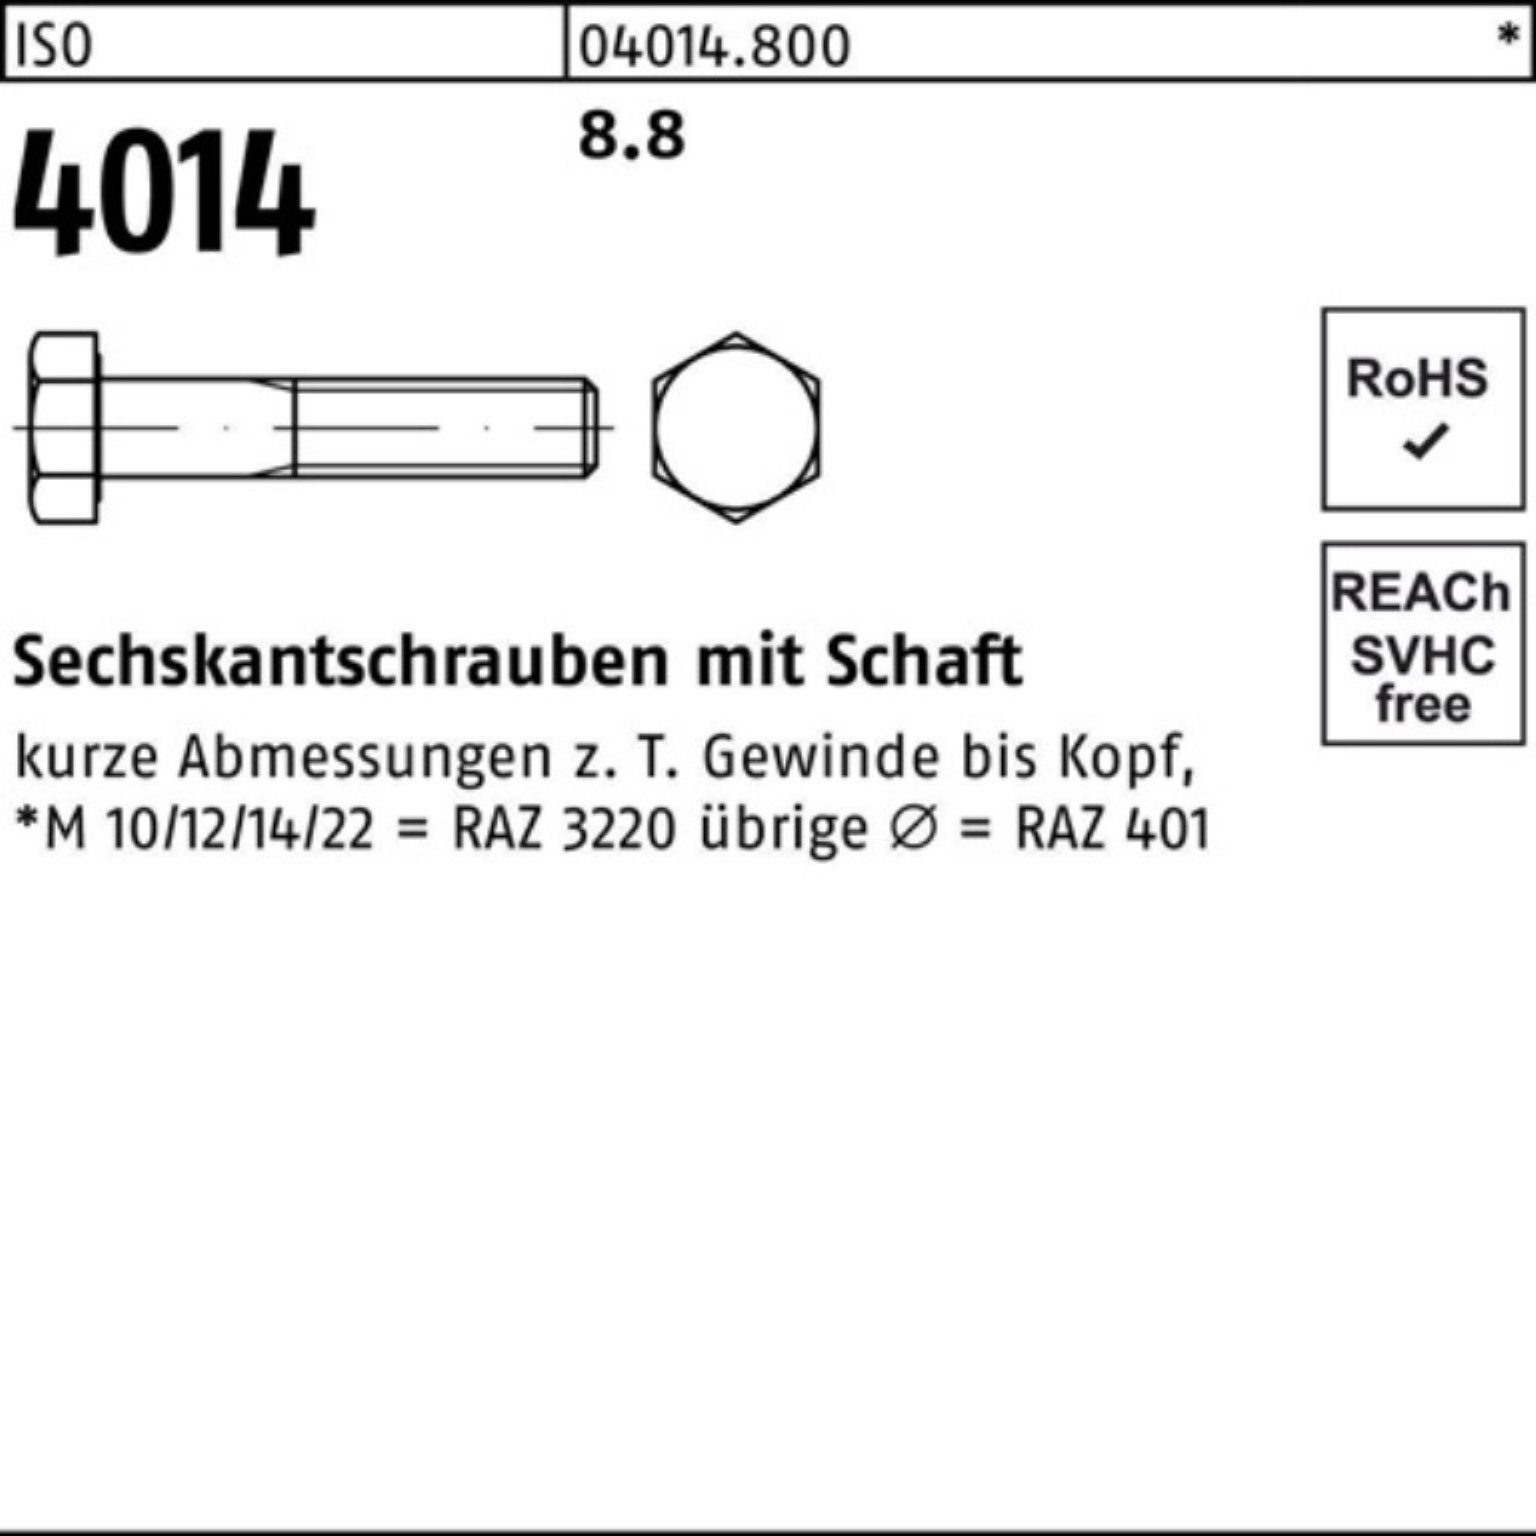 Bufab Sechskantschraube 100er Pack Sechskantschraube ISO 210 Stück 8.8 Schaft M36x 4014 ISO 1